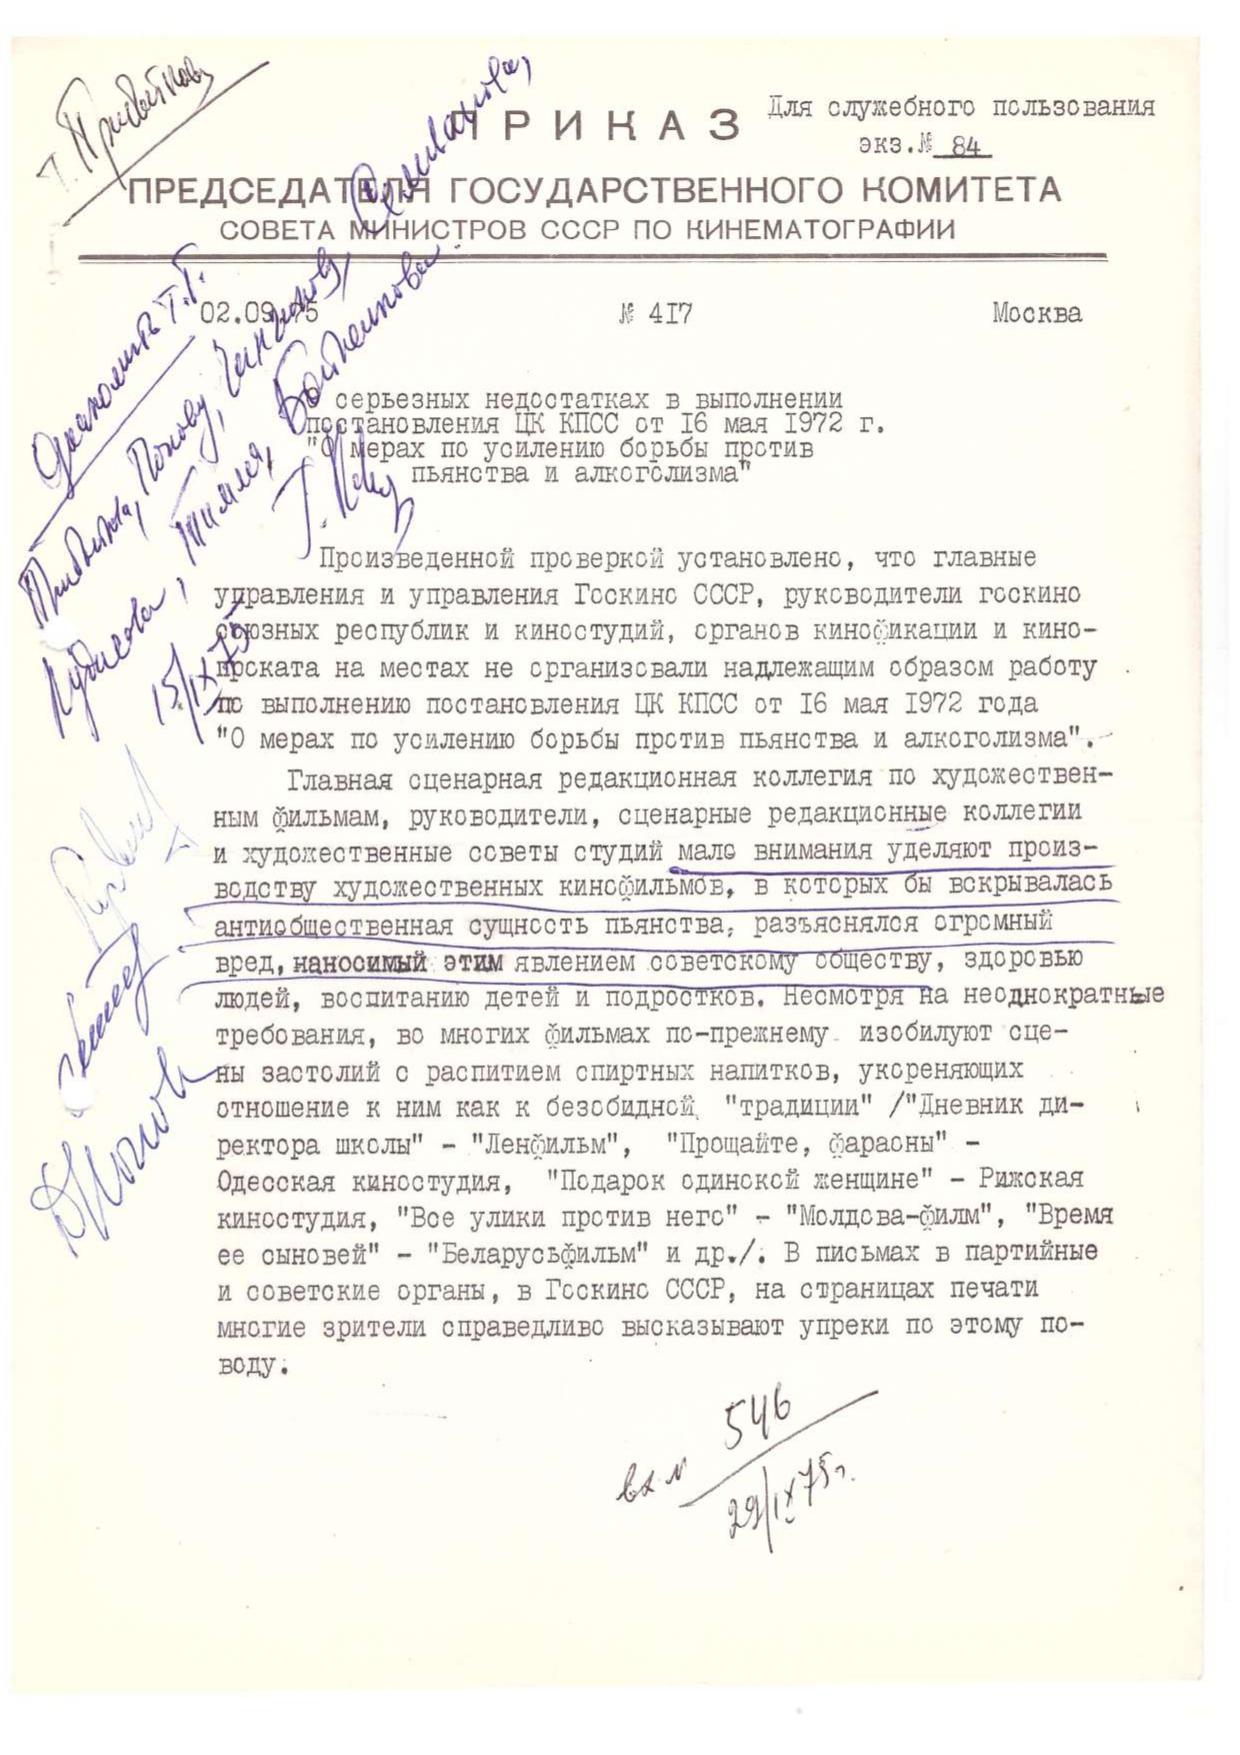 Приказ № 417 О недостатках в выполнении постановления ЦК КПСС от 16.02.72 (1975)